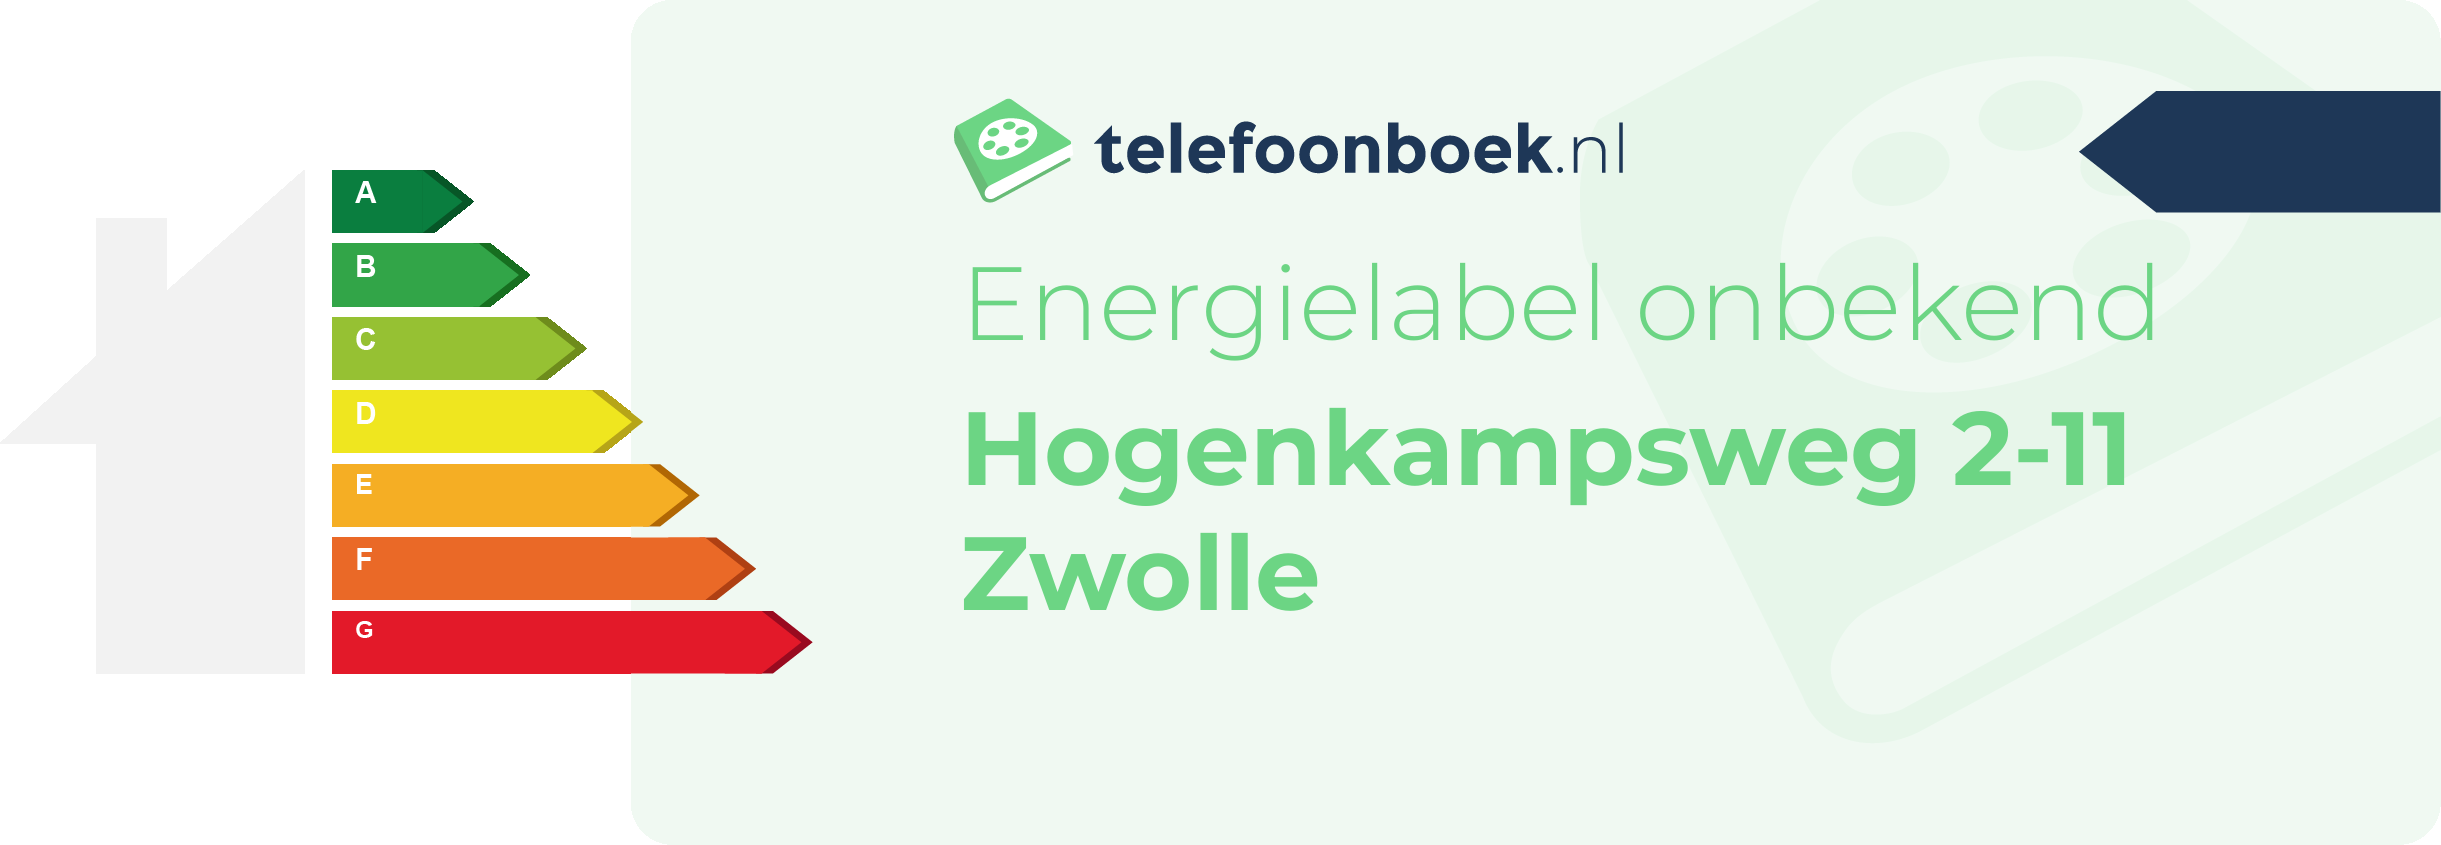 Energielabel Hogenkampsweg 2-11 Zwolle